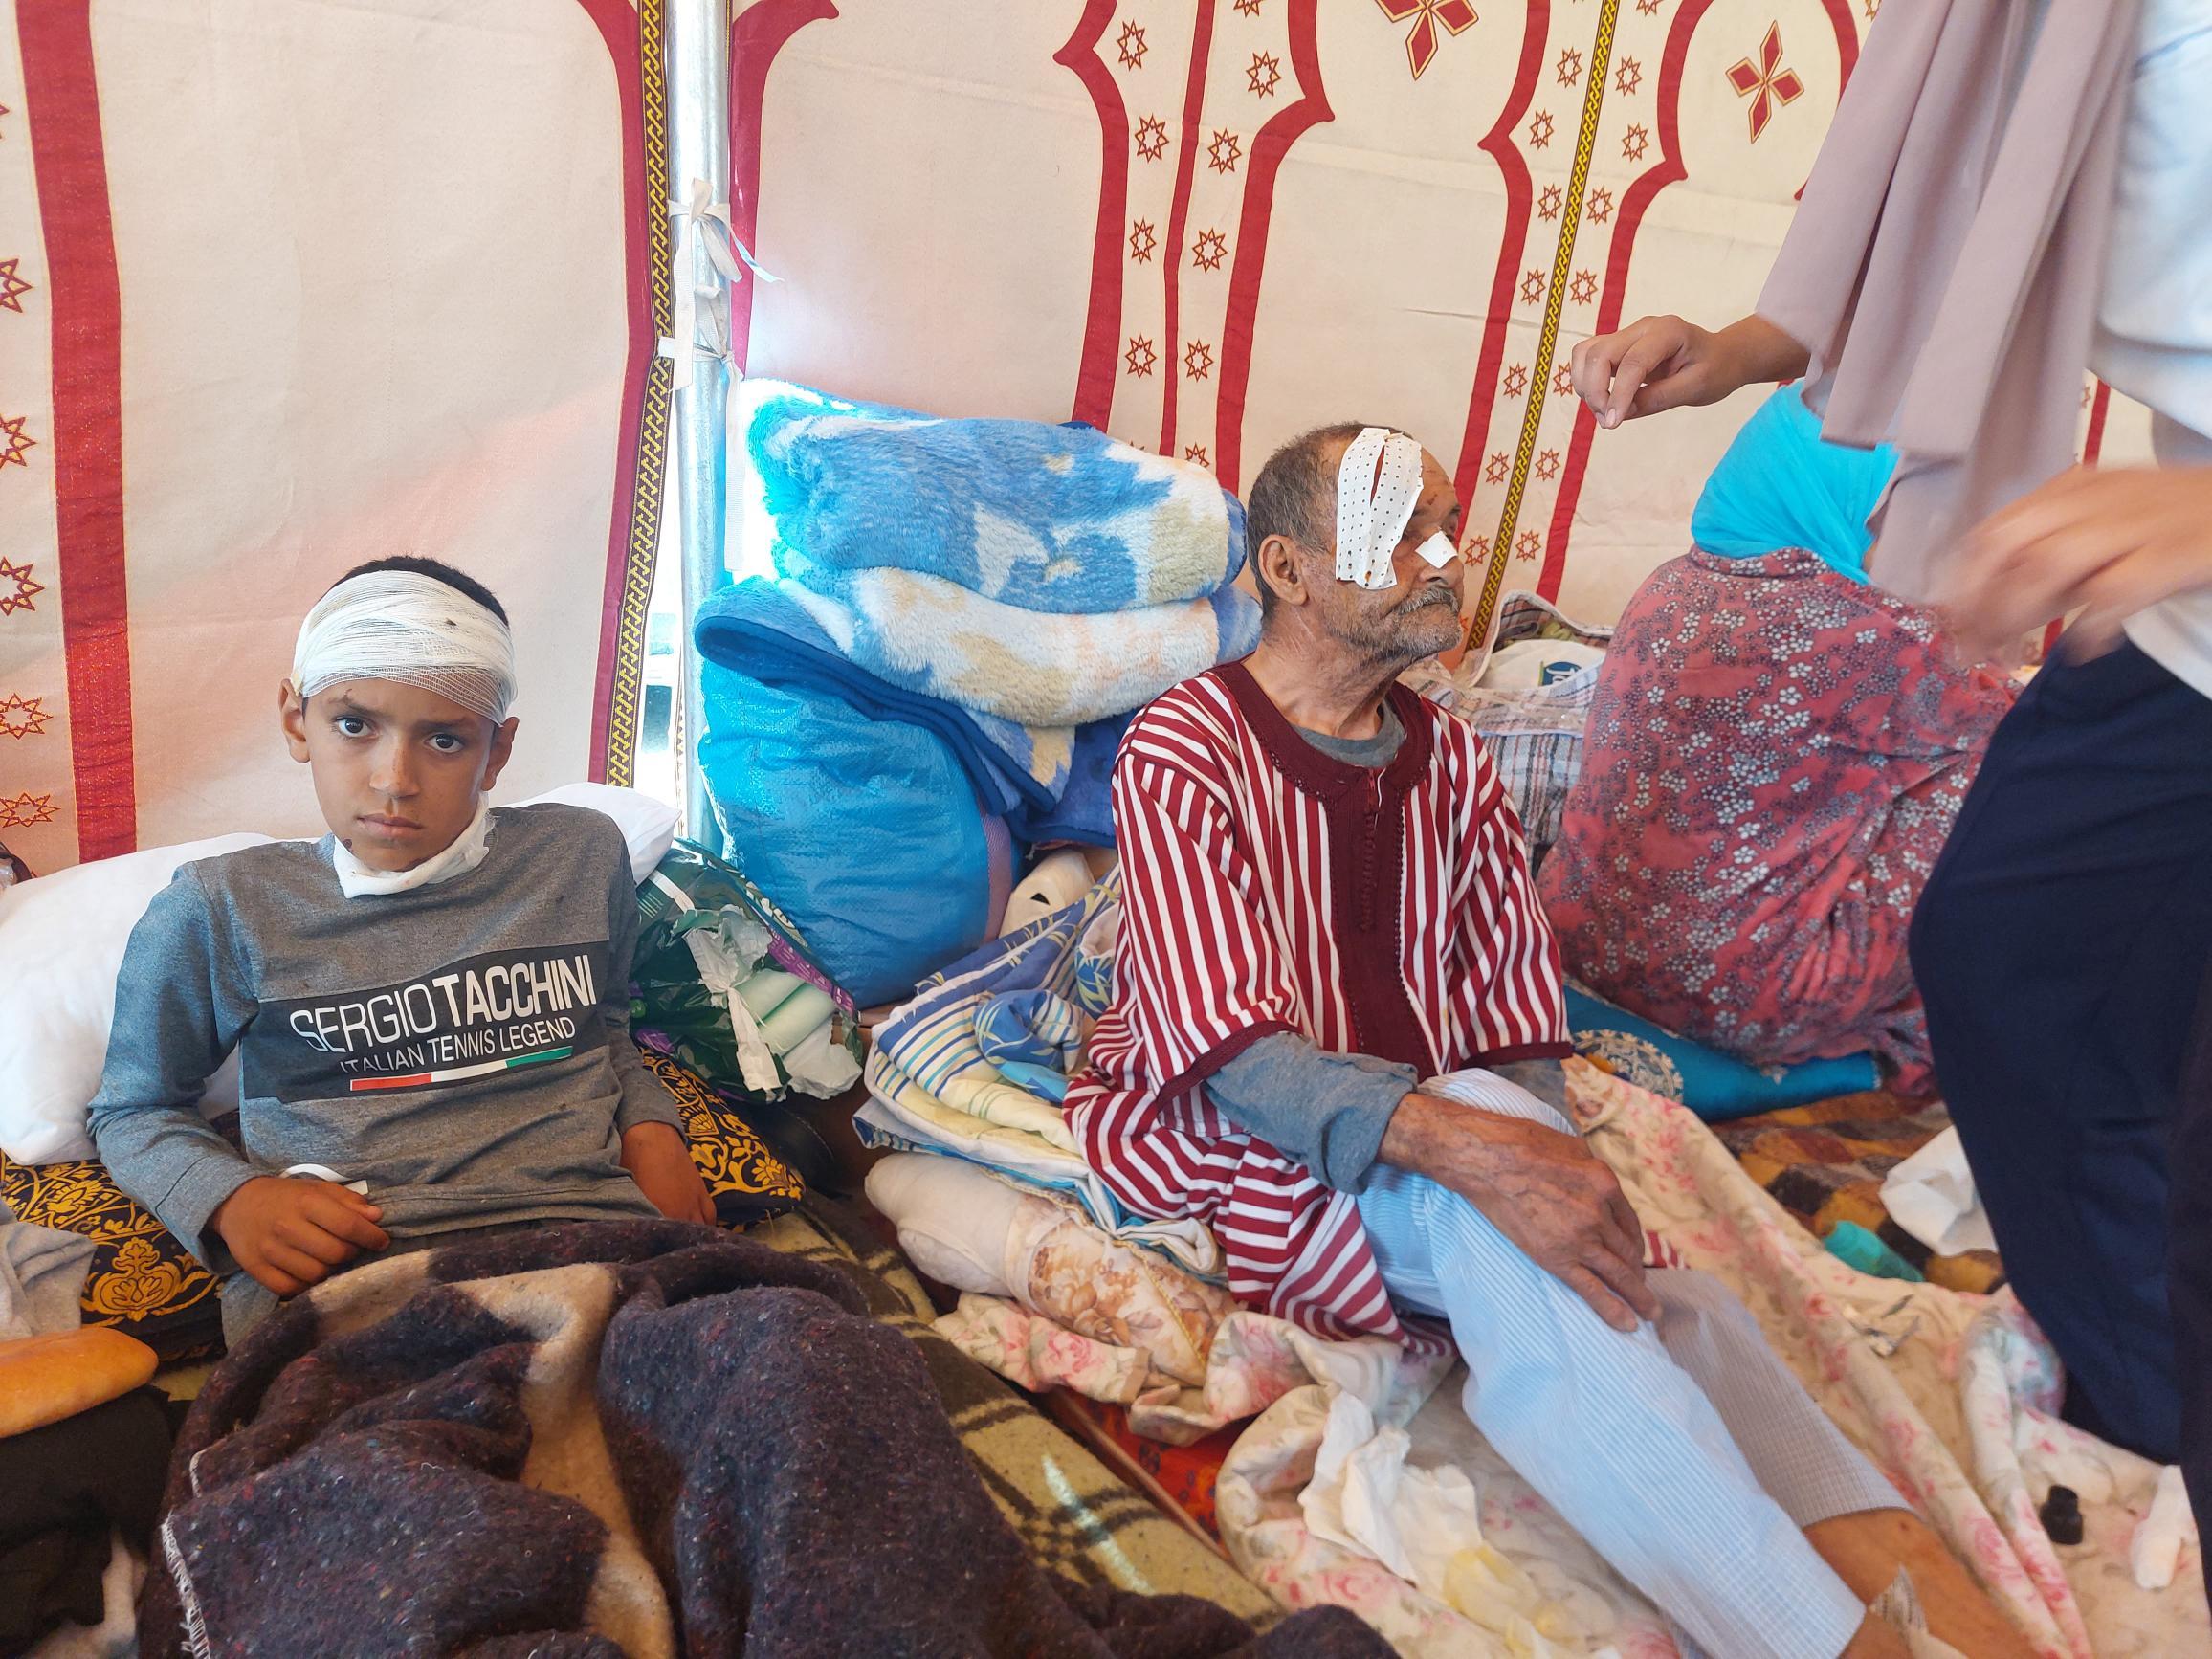 Blessé au crâne et au cou lors du séisme, Mohamed, 12 ans, est soigné à l'hôpital de Taroudant. Le vieil homme à ses côtés a de nombreux points de suture. LP/Timothée Boutry